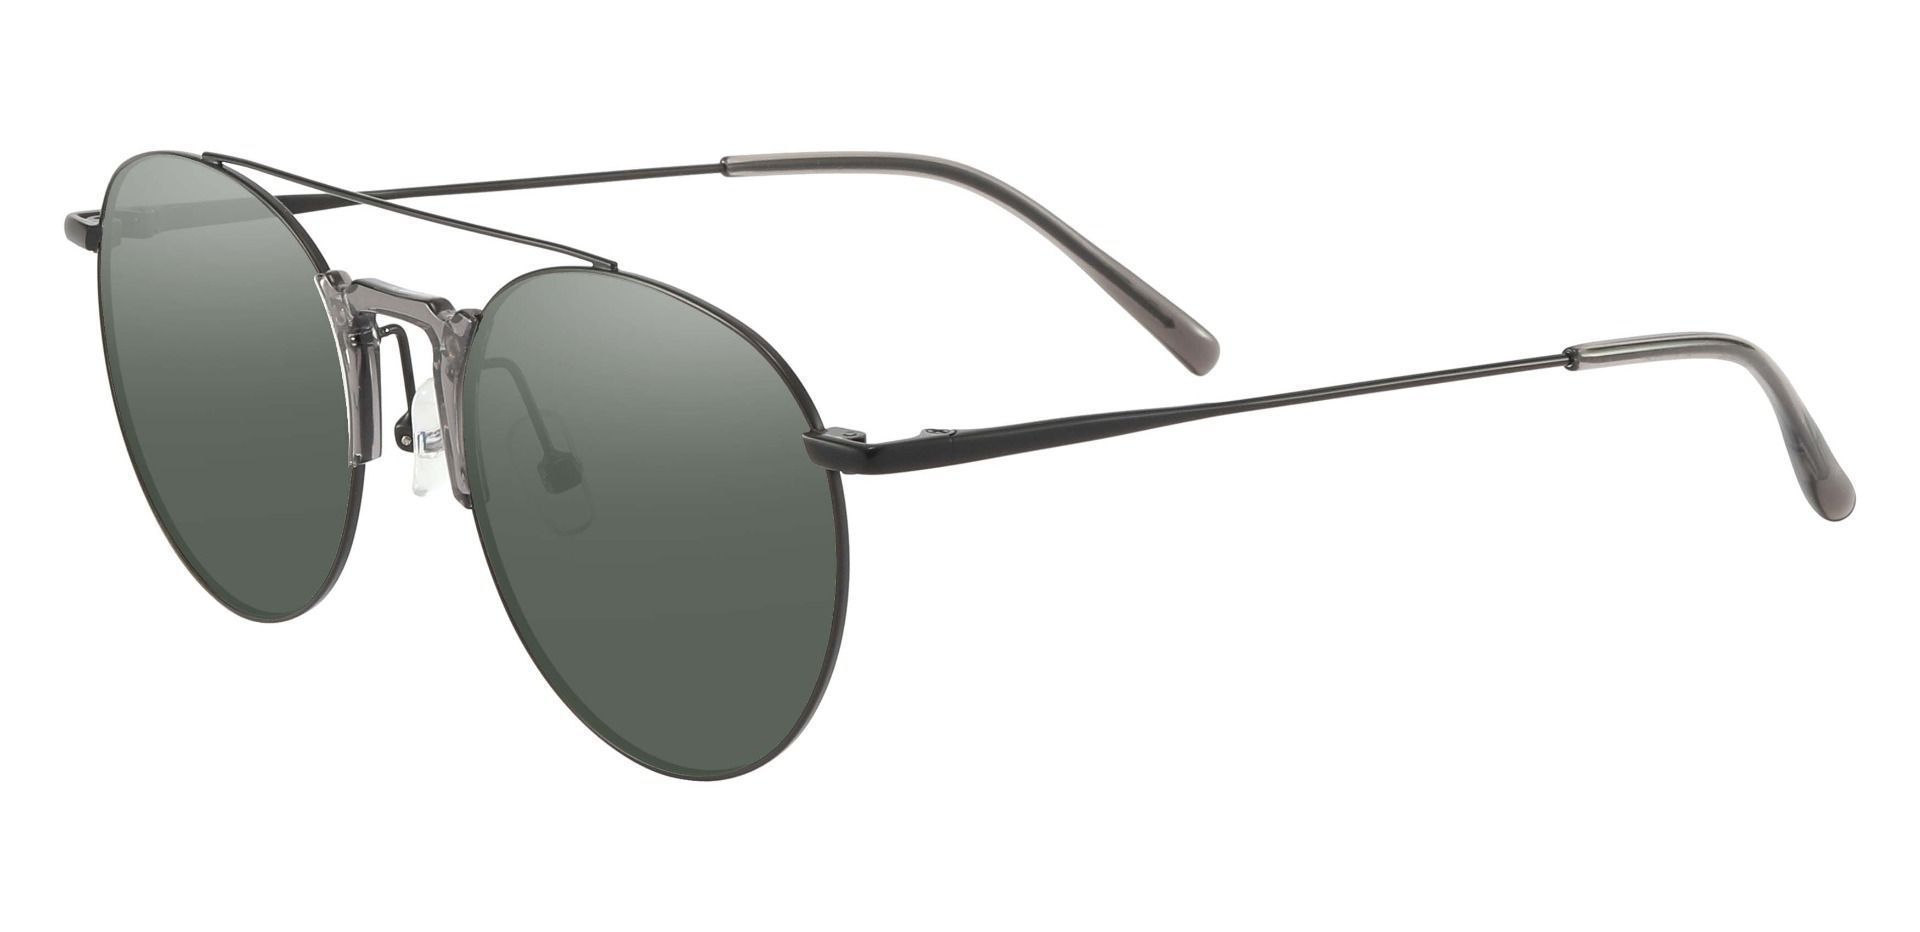 Ludden Aviator Progressive Sunglasses - Black Frame With Green Lenses